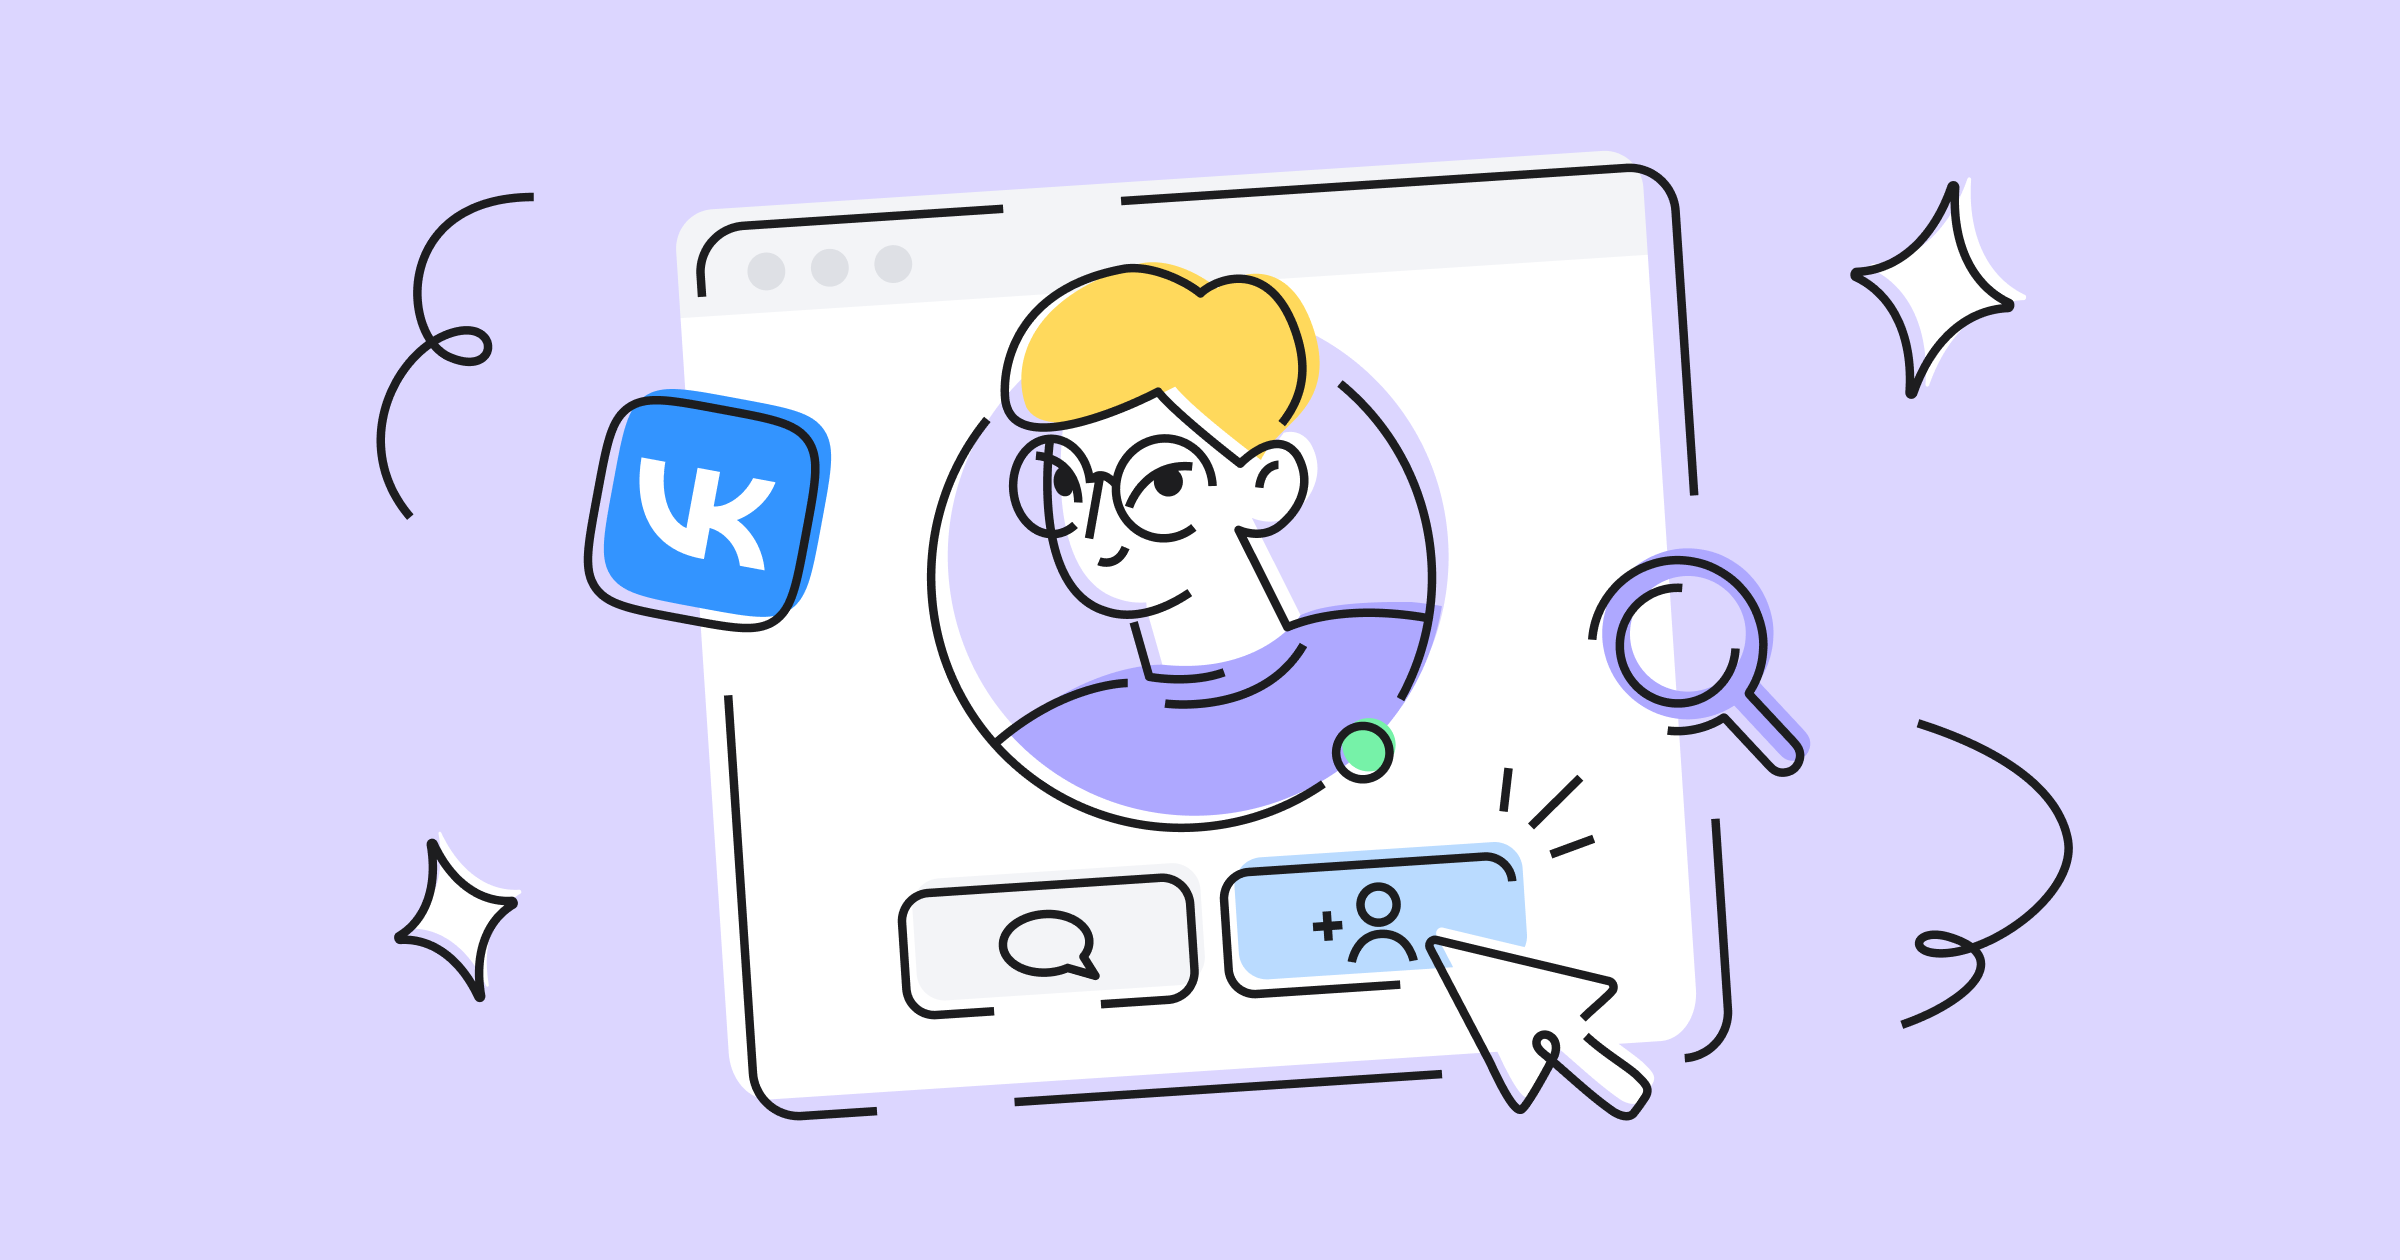 Поиск сотрудников во ВКонтакте: пошаговая инструкция